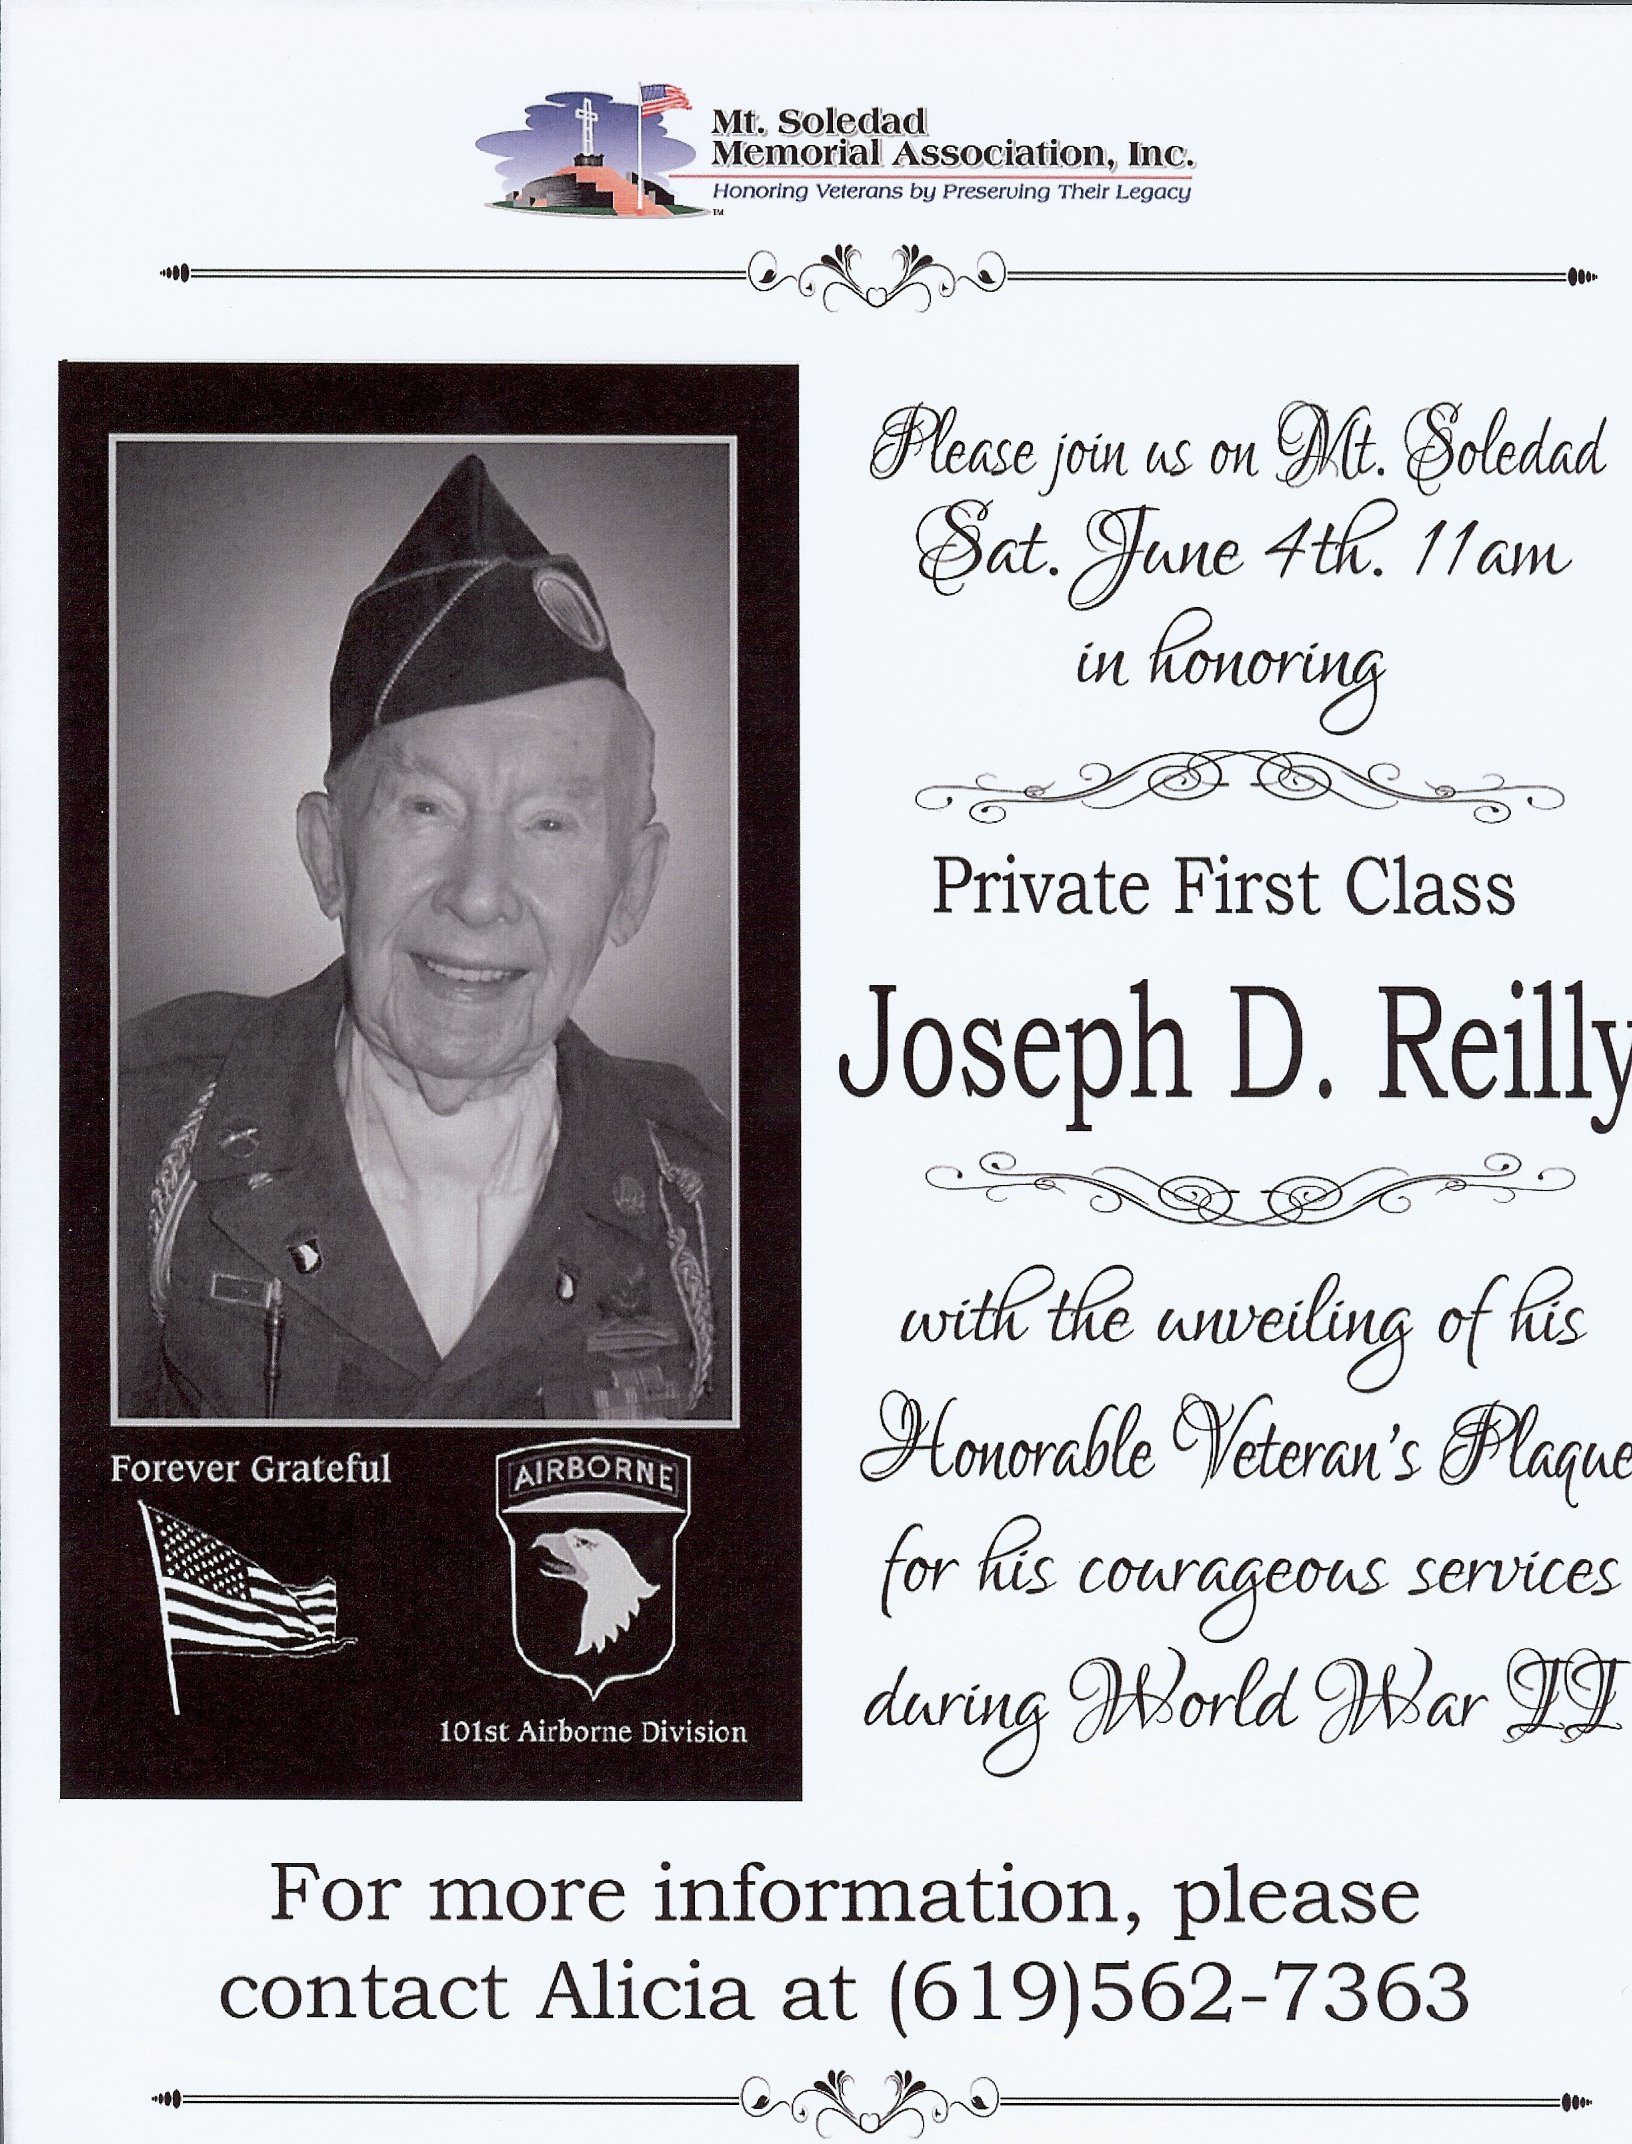 Private First Class Joseph D. Reilly Council 9590